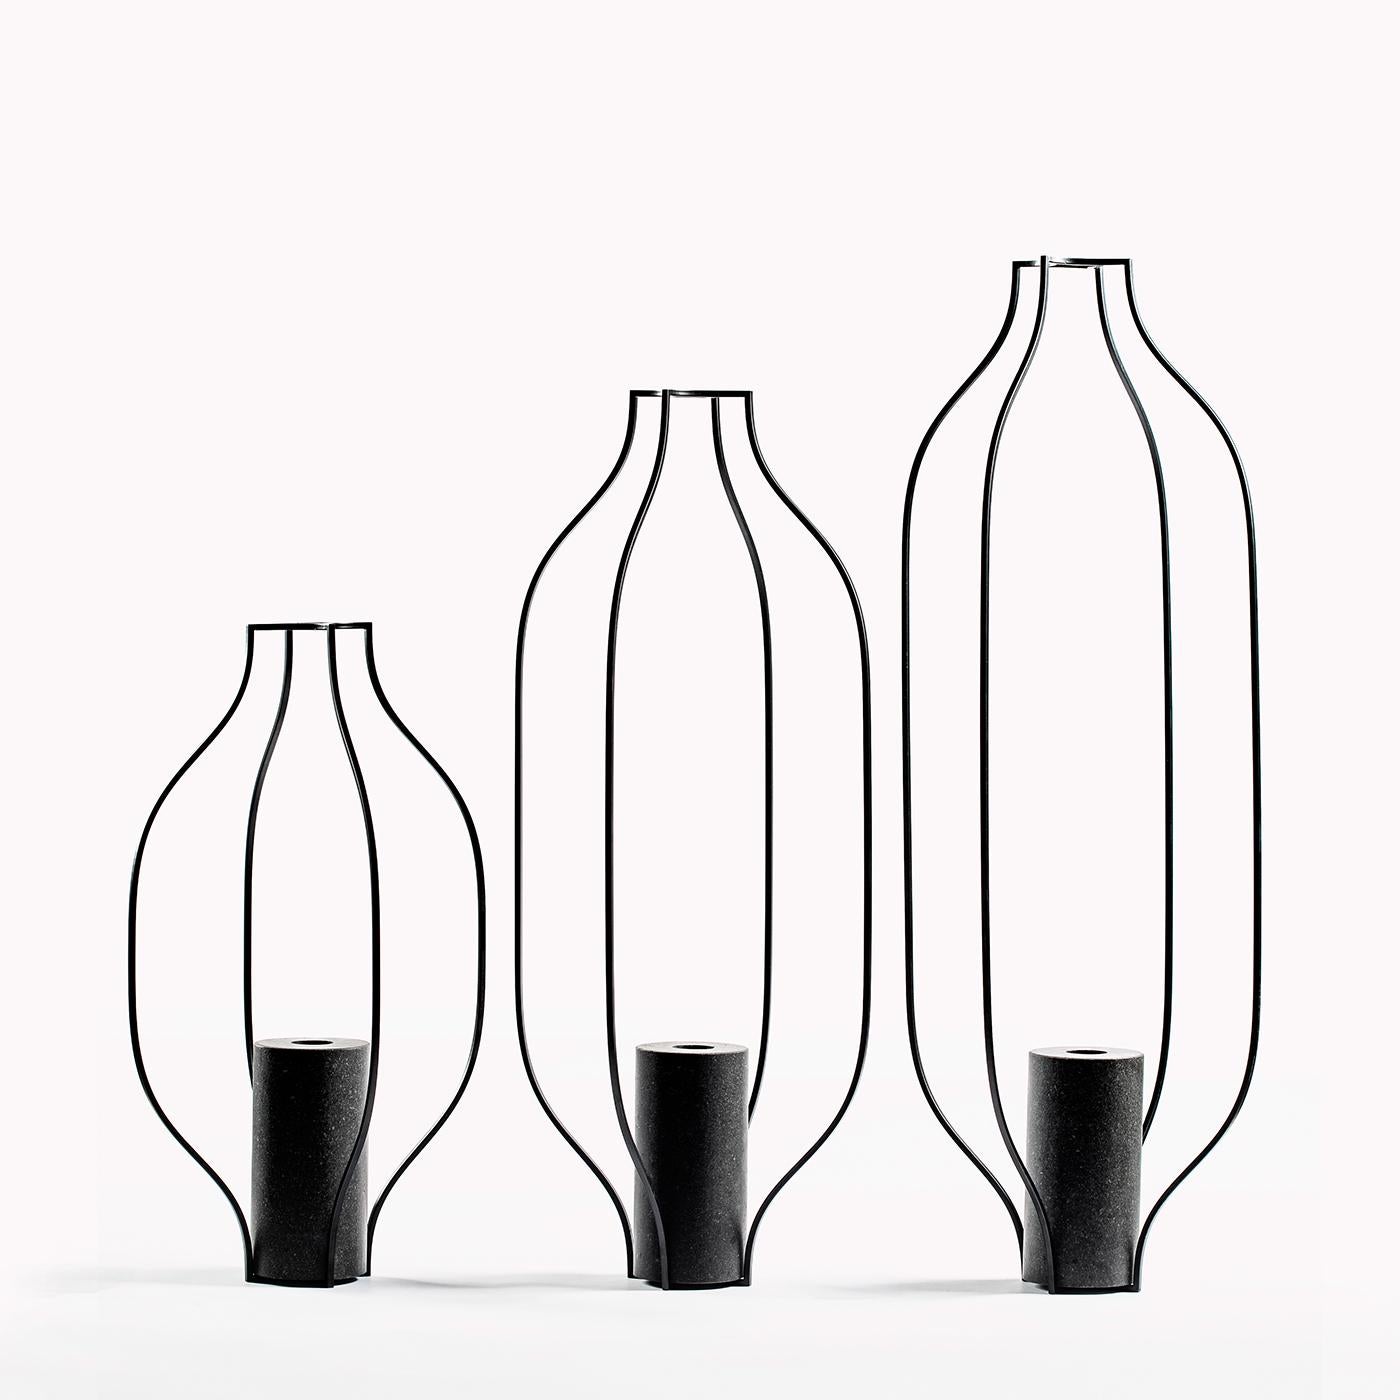 Eisen und Naturstein vereinen sich zu einer laternenartigen Vase, die durch ihre Vertikalität besticht. Dieses Stück aus der Kollektion Tarsie Geometriche besteht aus undurchsichtigen, schwarzen Eisenstäben, die eine zylindrische Vase aus schwarzem